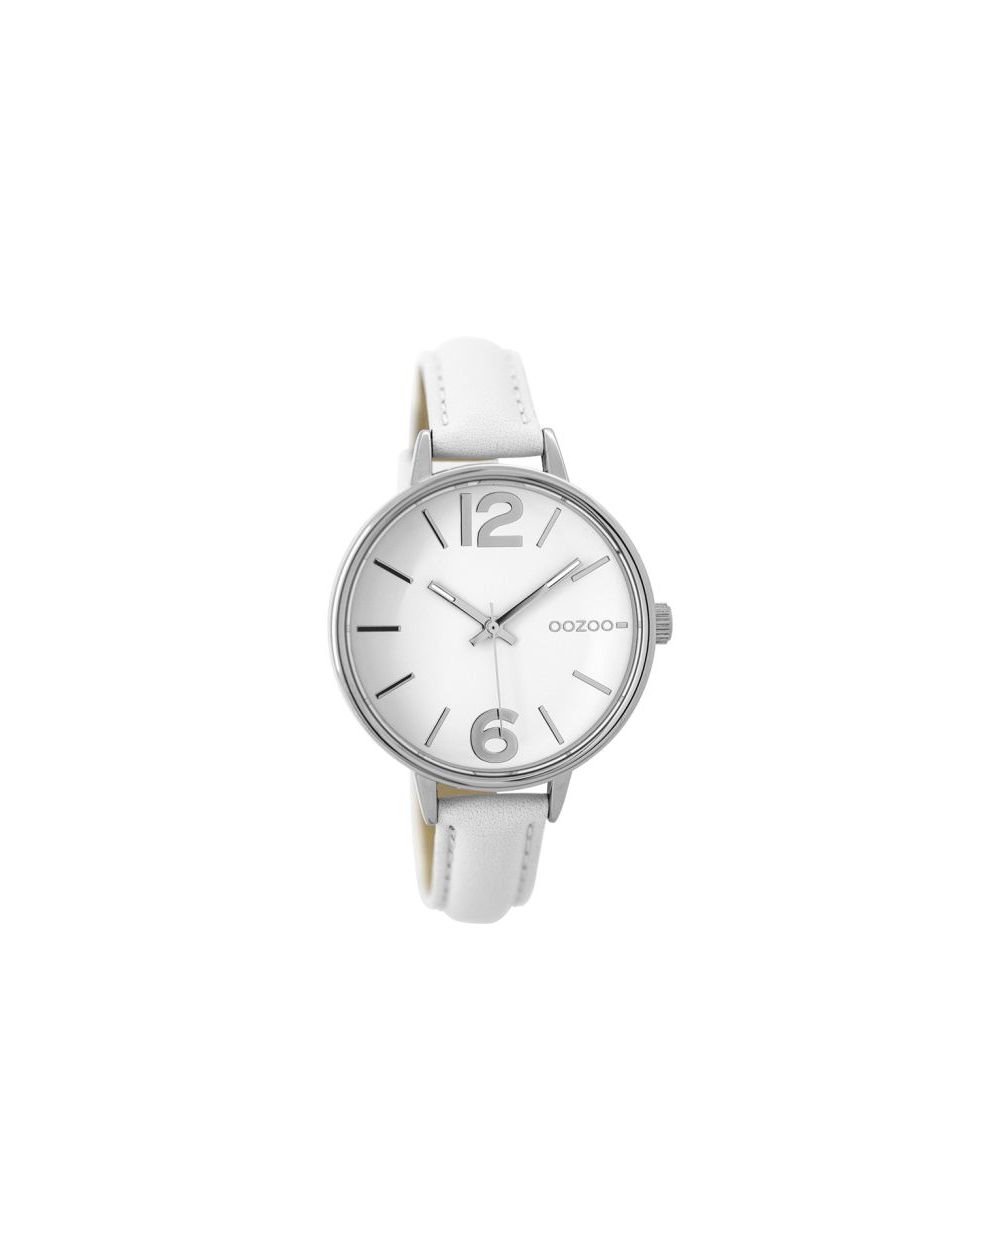 Oozoo montre/watch/horloge C9480